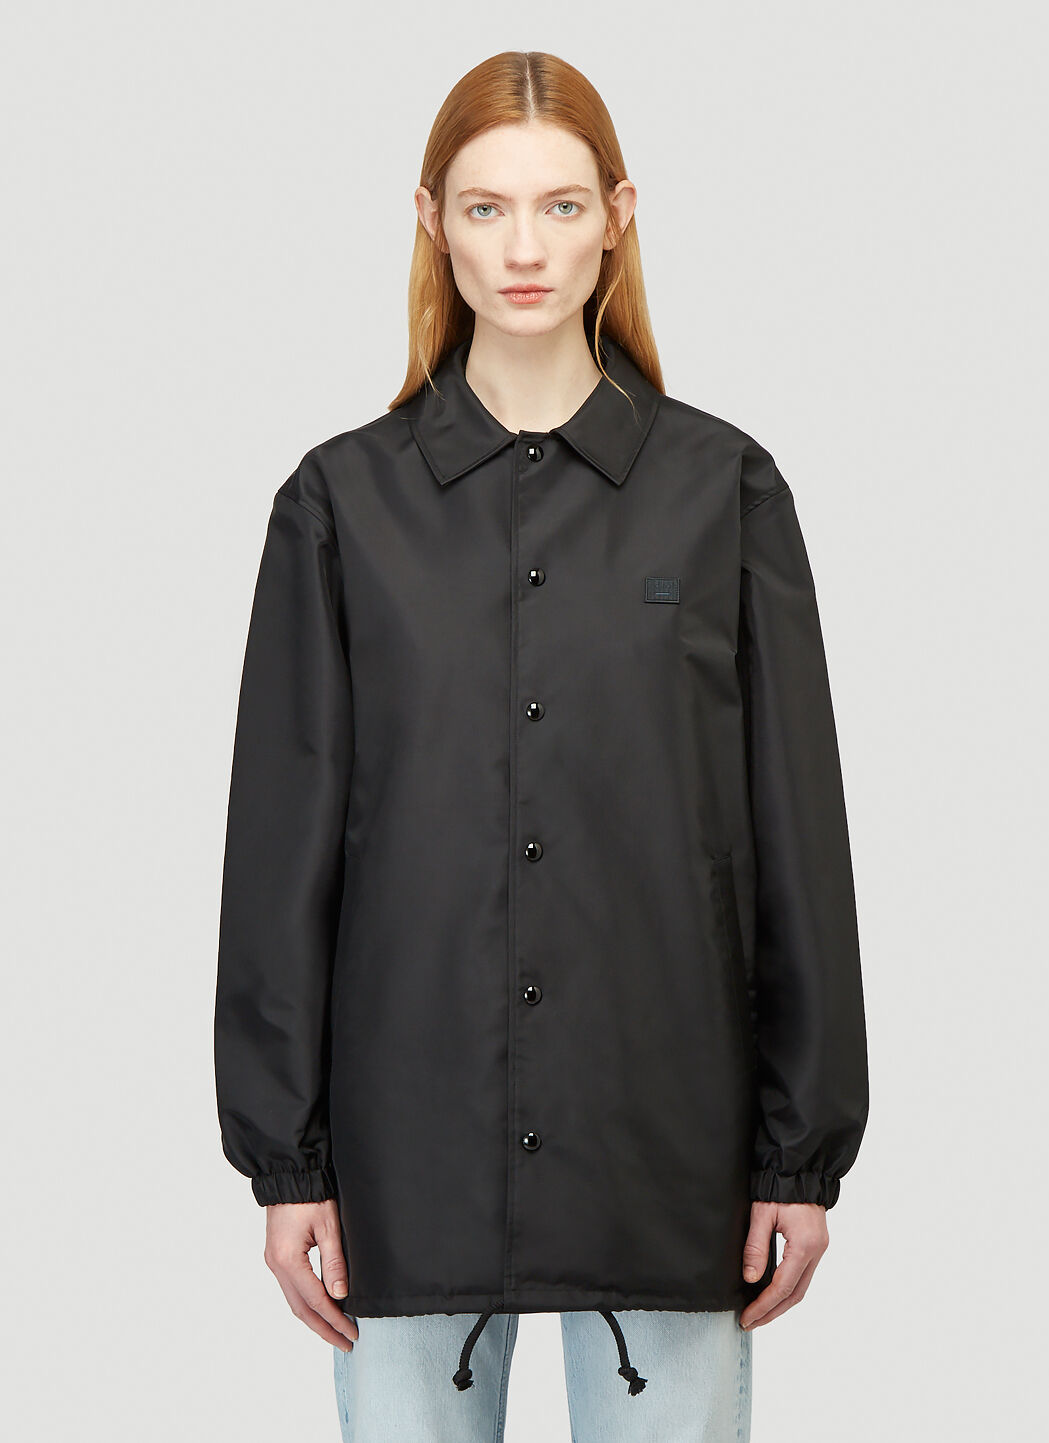 Saint Laurent Face Print Jacket 黑色 sla0238013